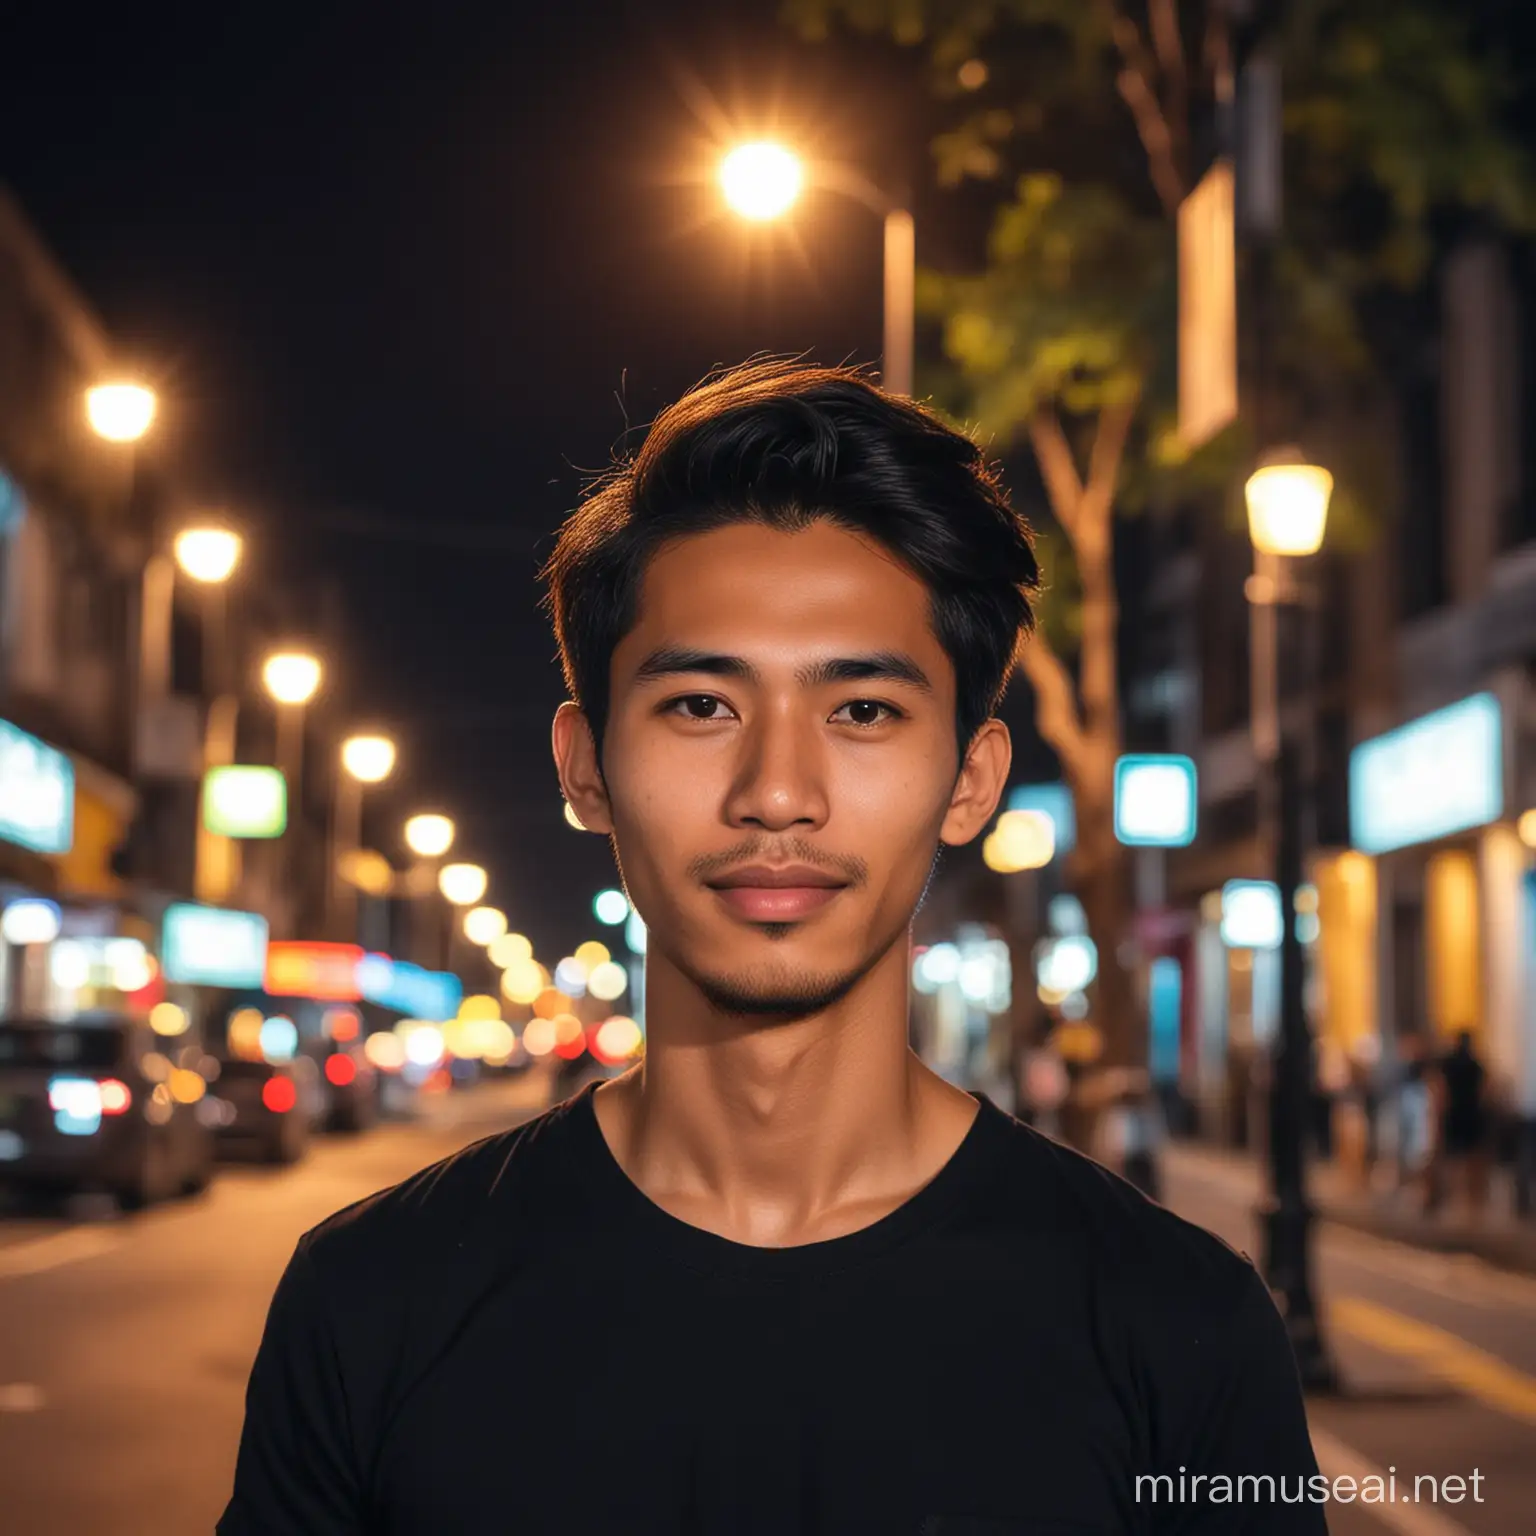 Foto normal pria indonesia umur 25 tahun, rambut medium, pakai baju hitam, lokasi jalan malam hari, latar belakang cahaya lampu warna warni, bokeh.